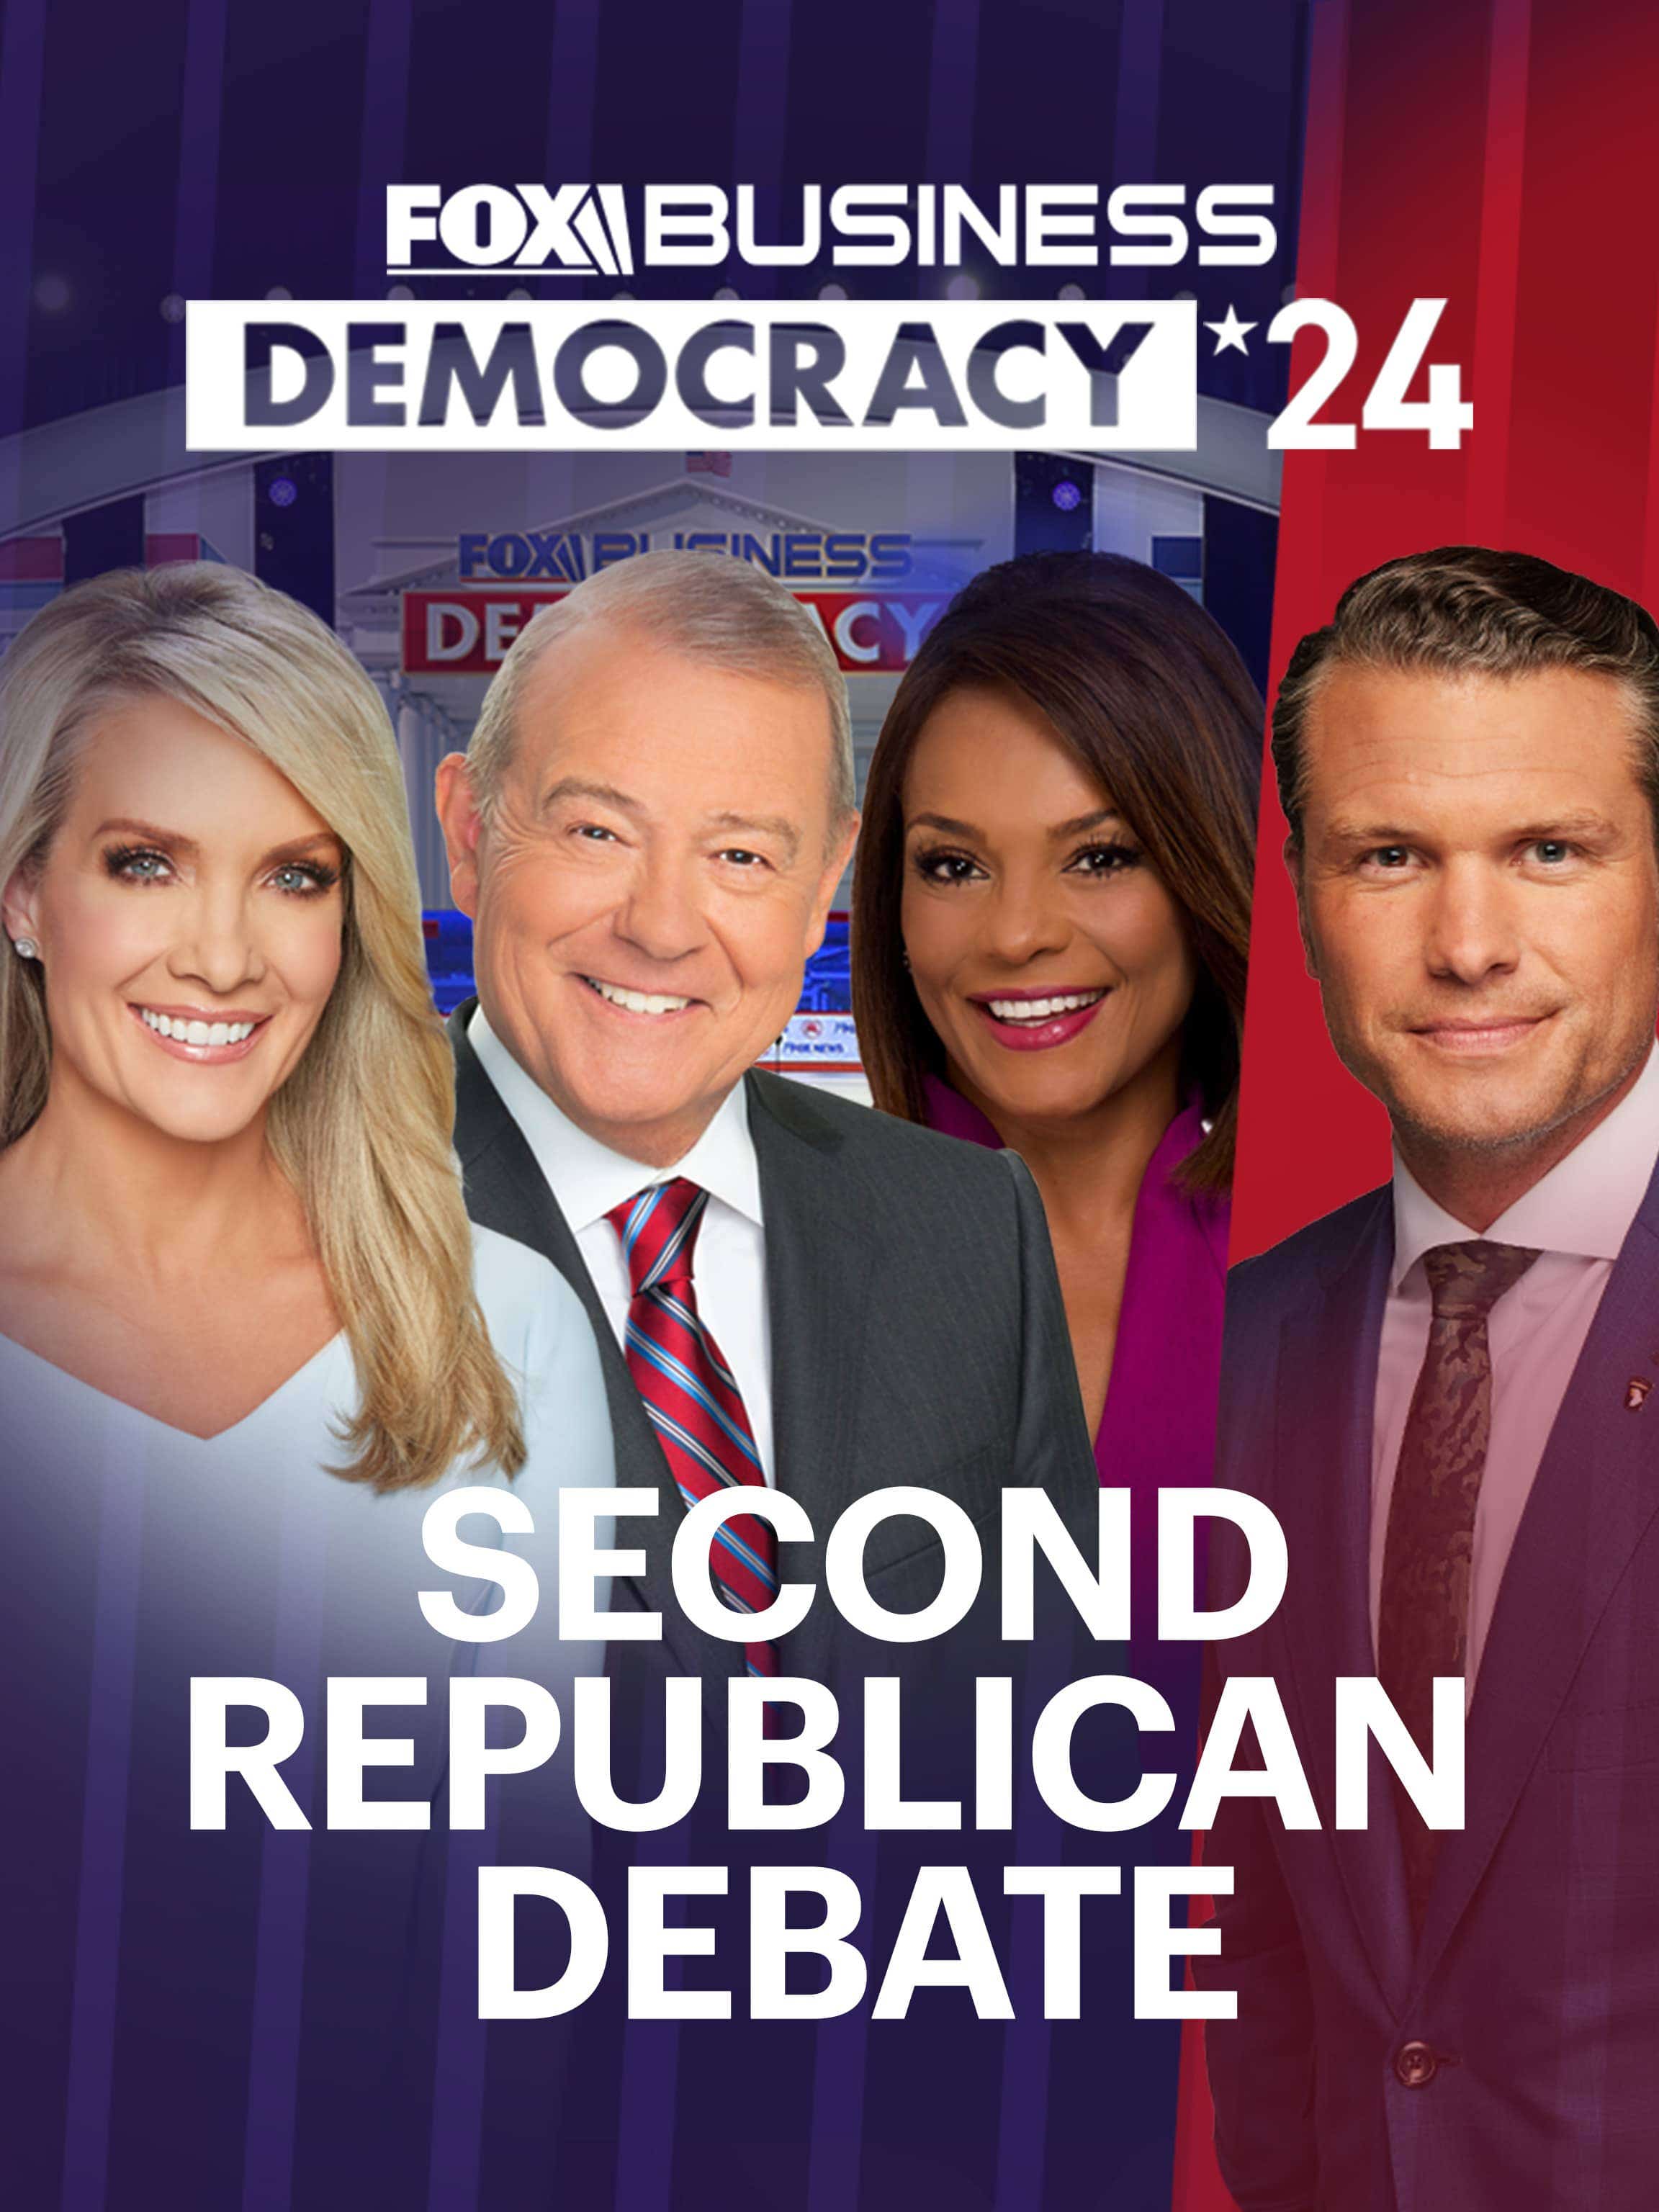 Second Republican Debate: Democracy 2024 dcg-mark-poster